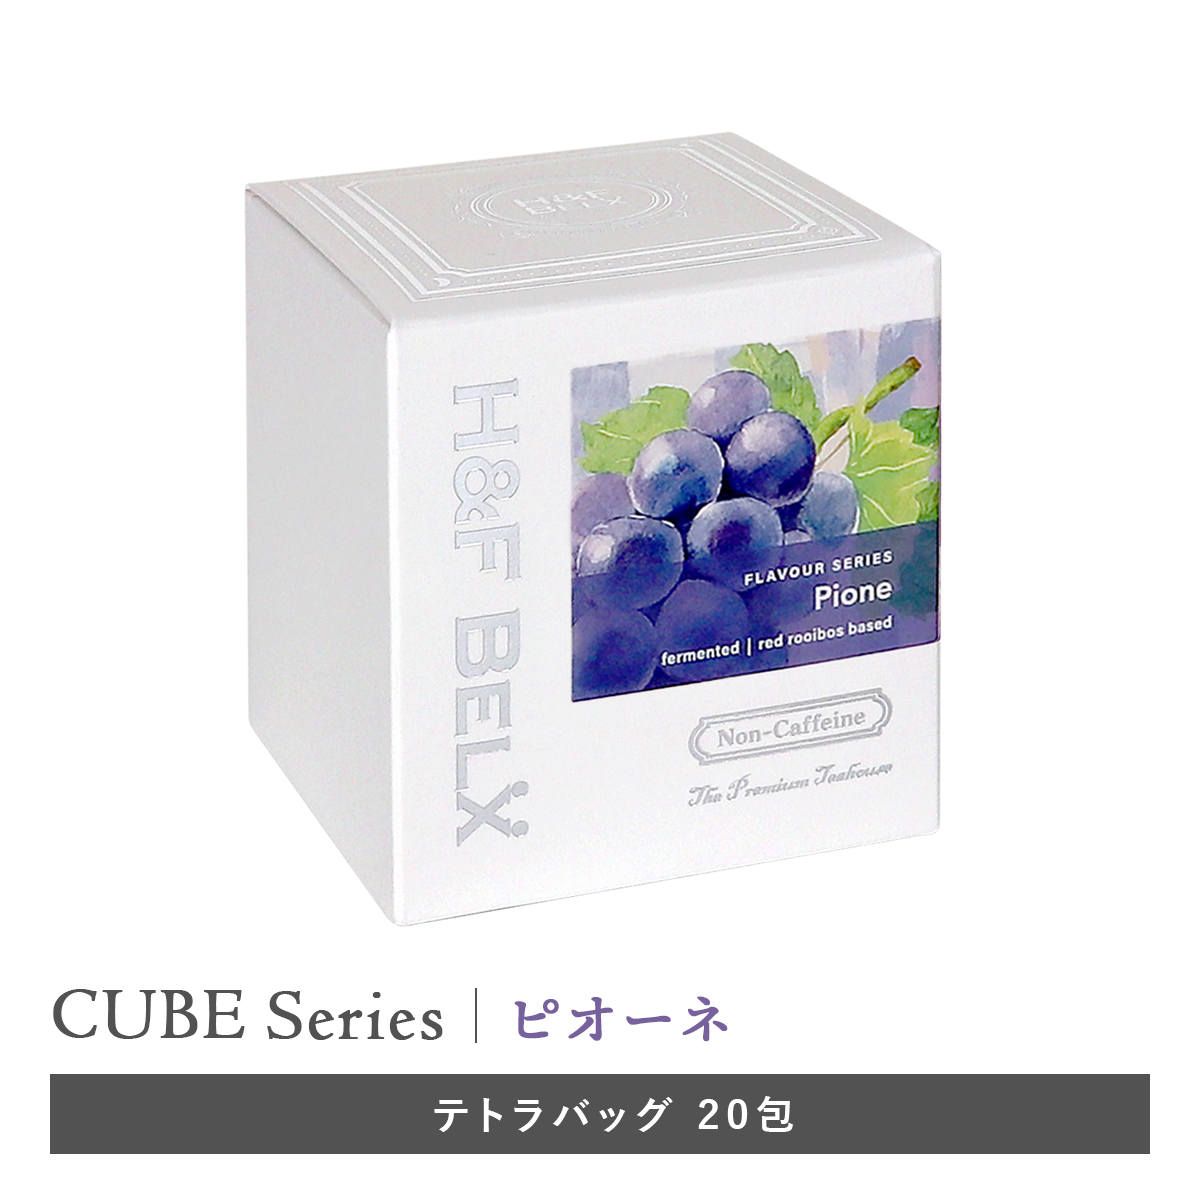 CUBE］ピオーネルイボスティー 2.0g×20包 プレミアム フレーバーティー 